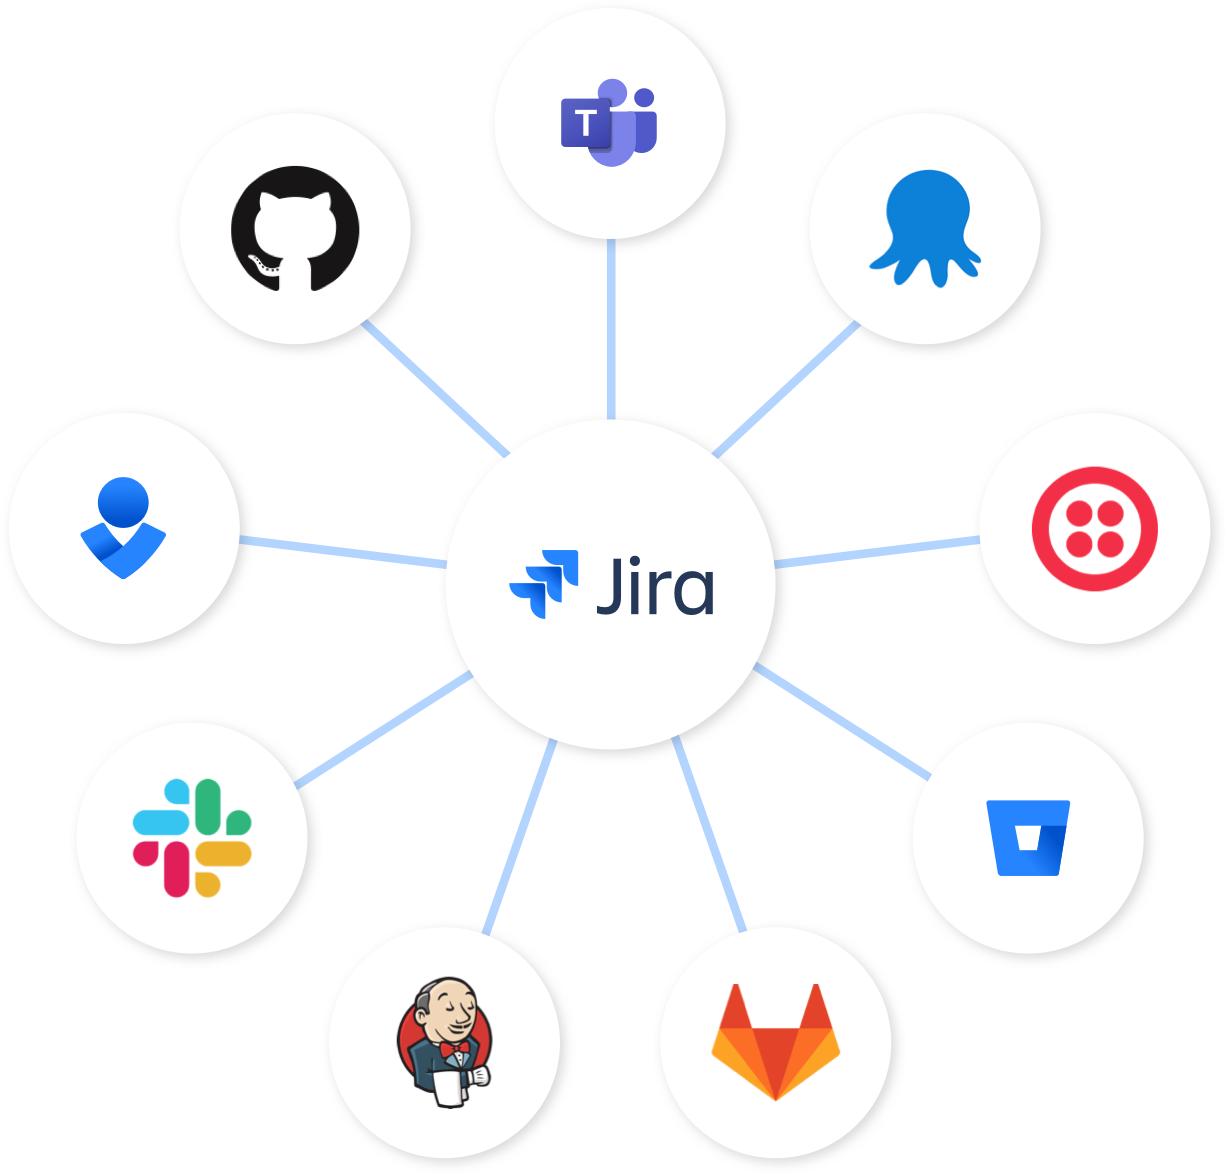 Jira ノード - Jira を中心に、Bitbucket、Slack、Opsgenie を連携